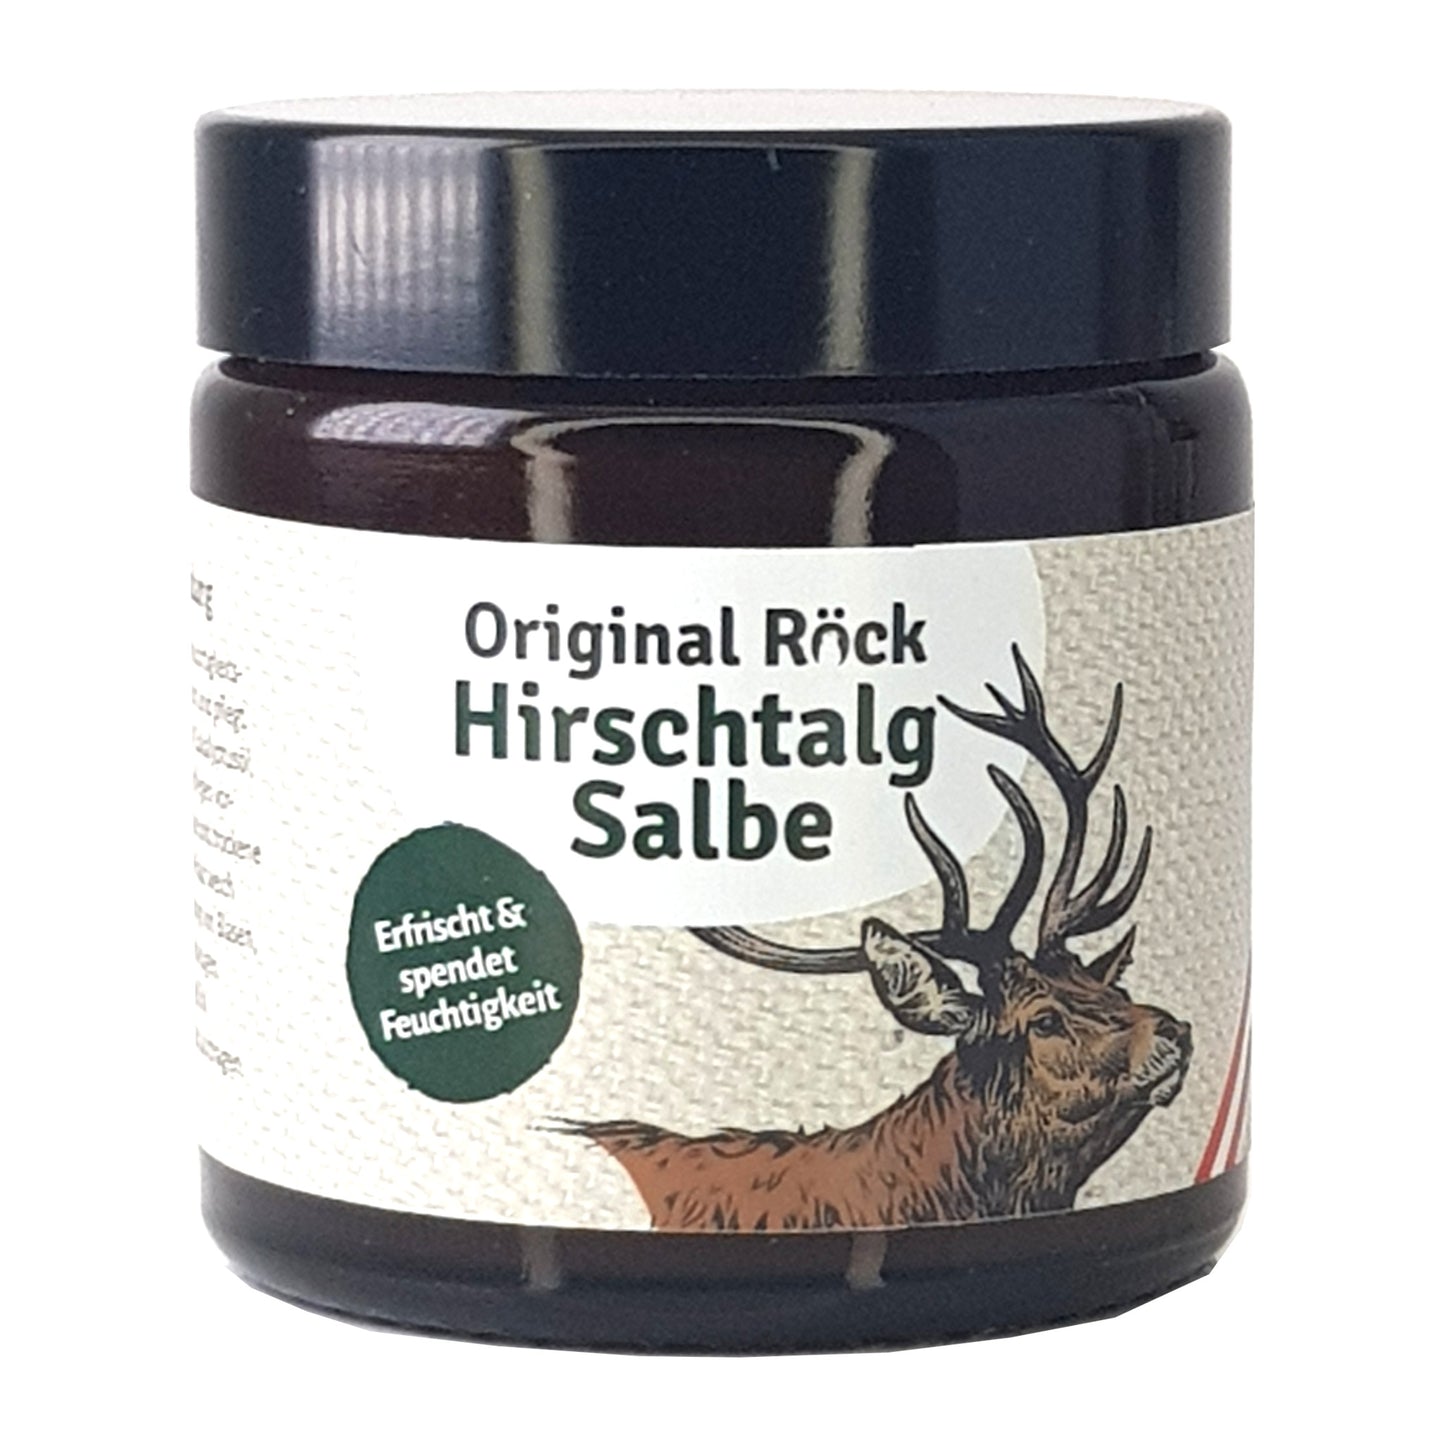 Hirschtalg-Salbe 100ml